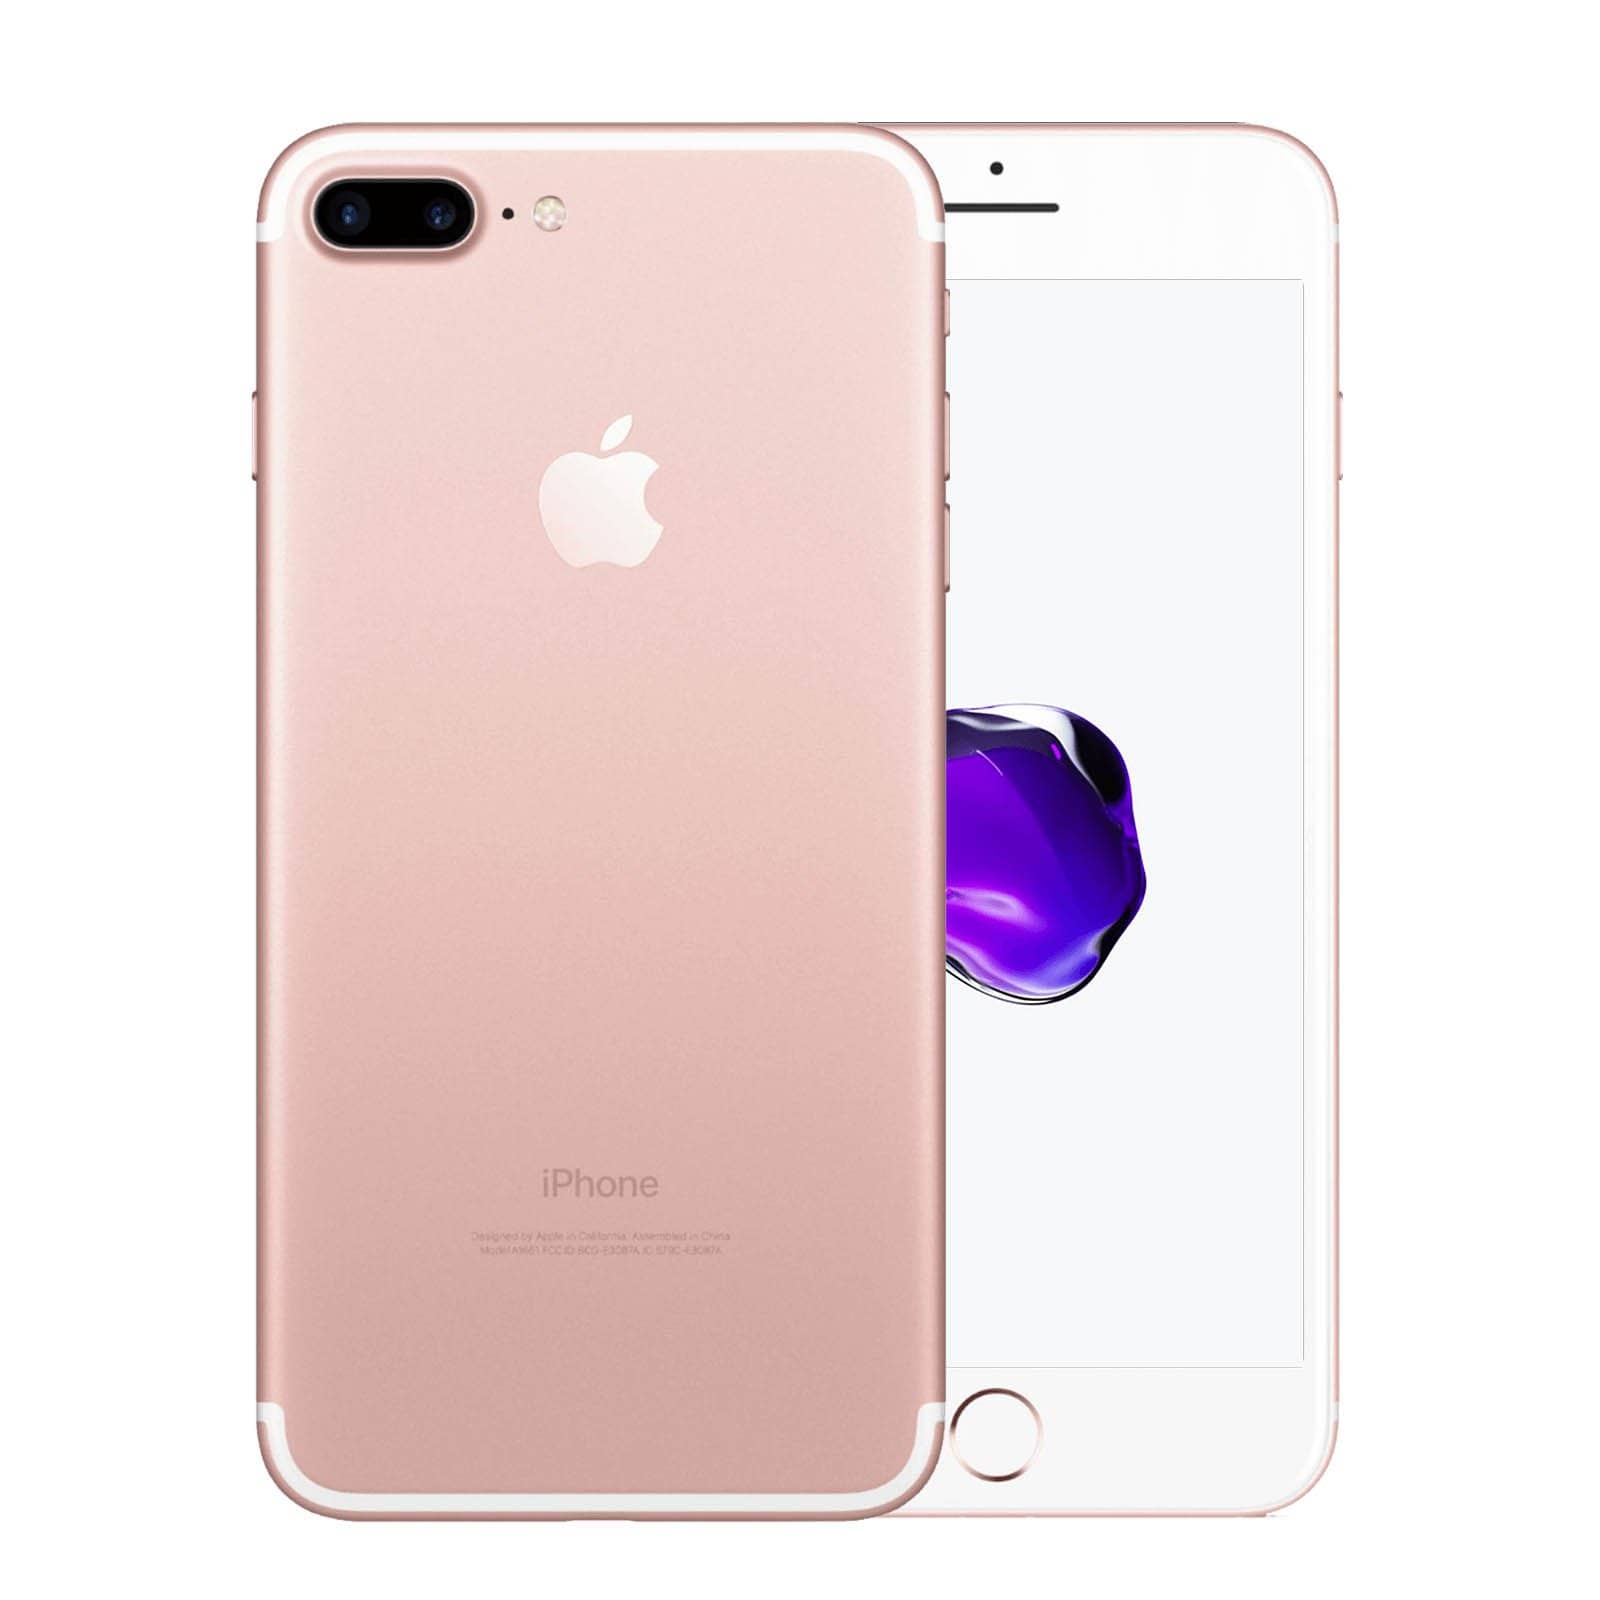 Apple iPhone 7 Plus 128GB Rose Gold Pristine - Unlocked 128GB Rose Gold Pristine